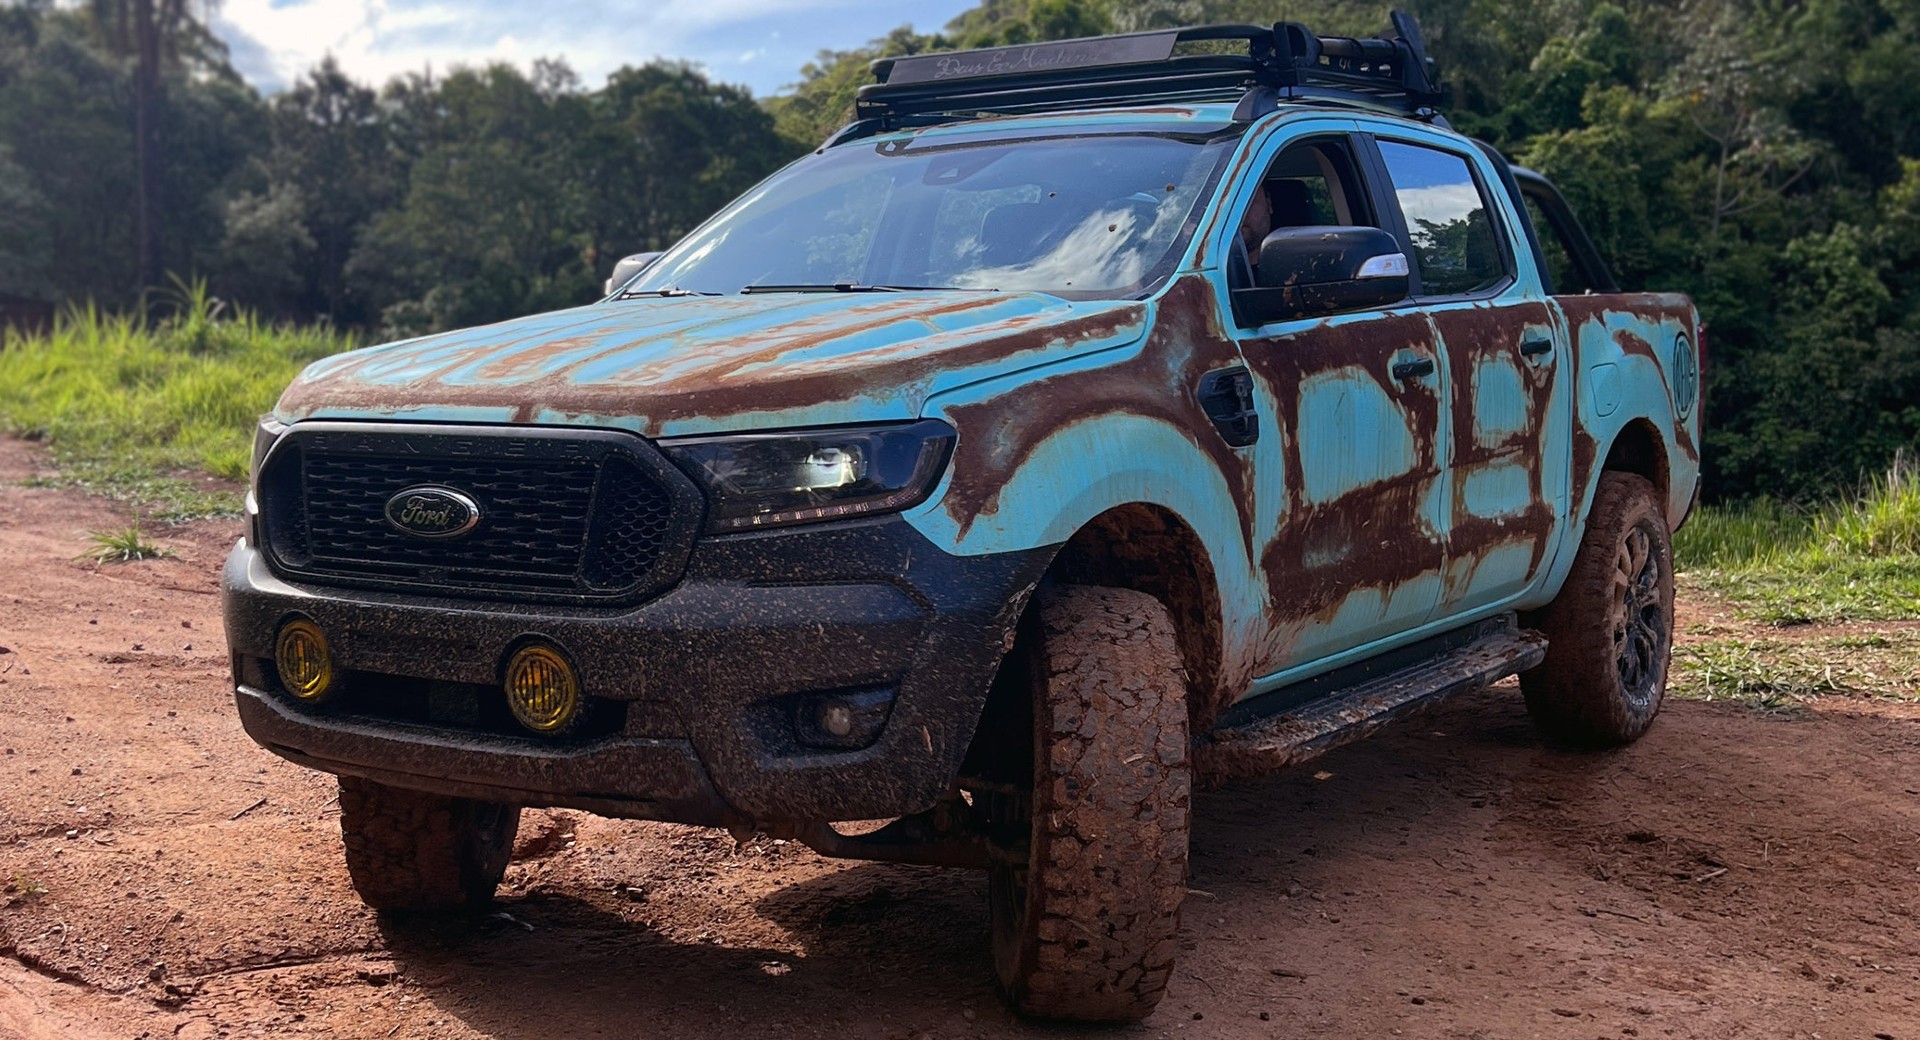 Le Ranger Rusty Blue de Ford Brésil semble avoir été abandonné dans la jungle